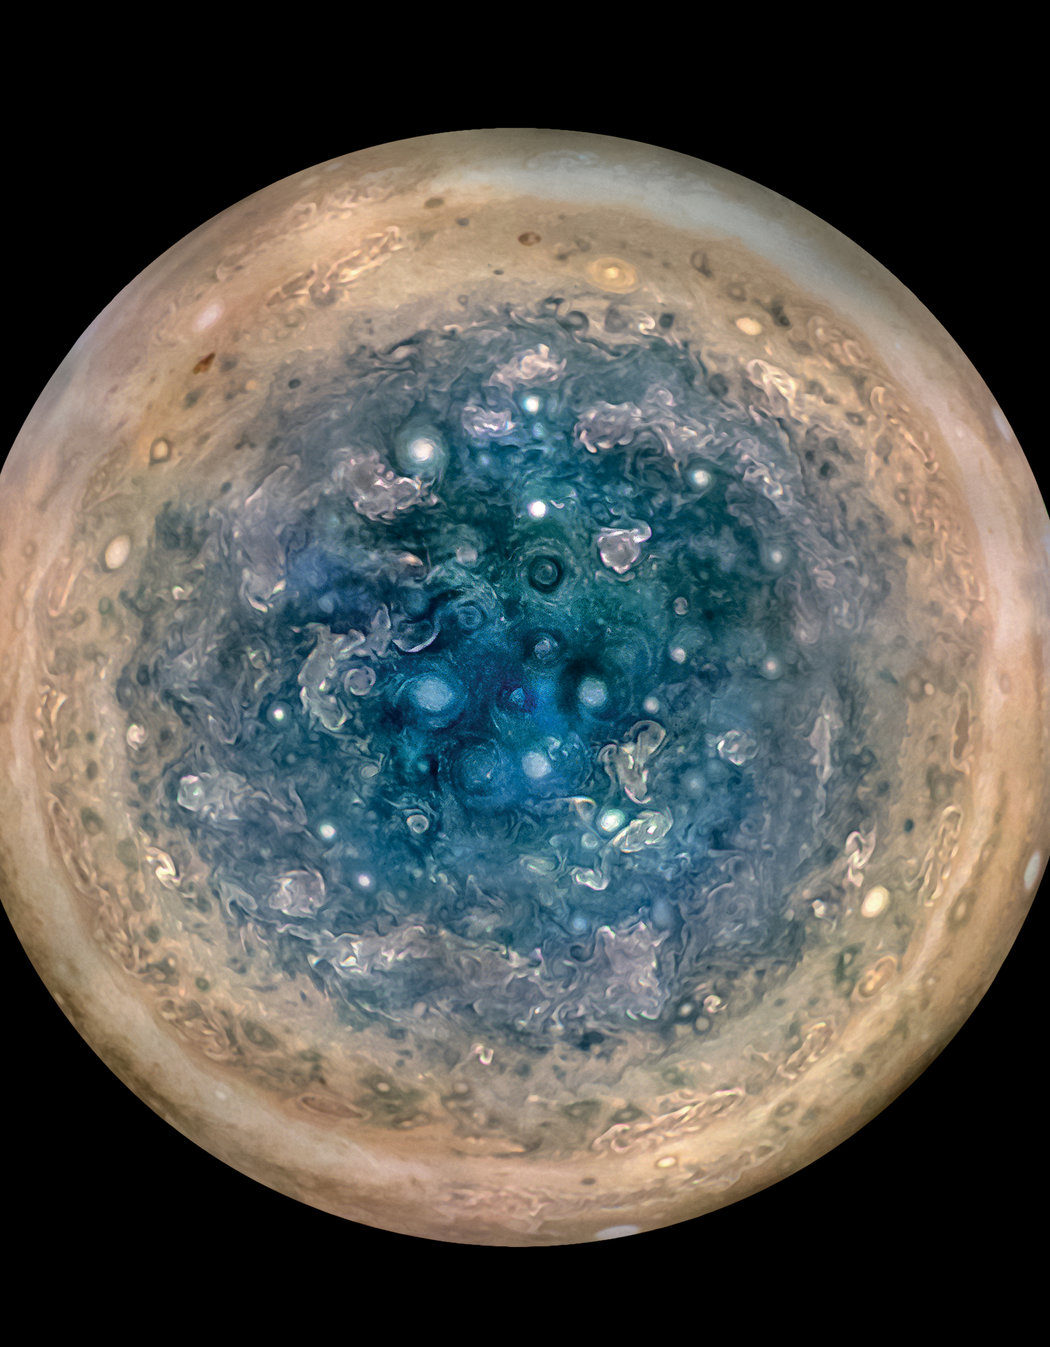 Jupiter’s south pole